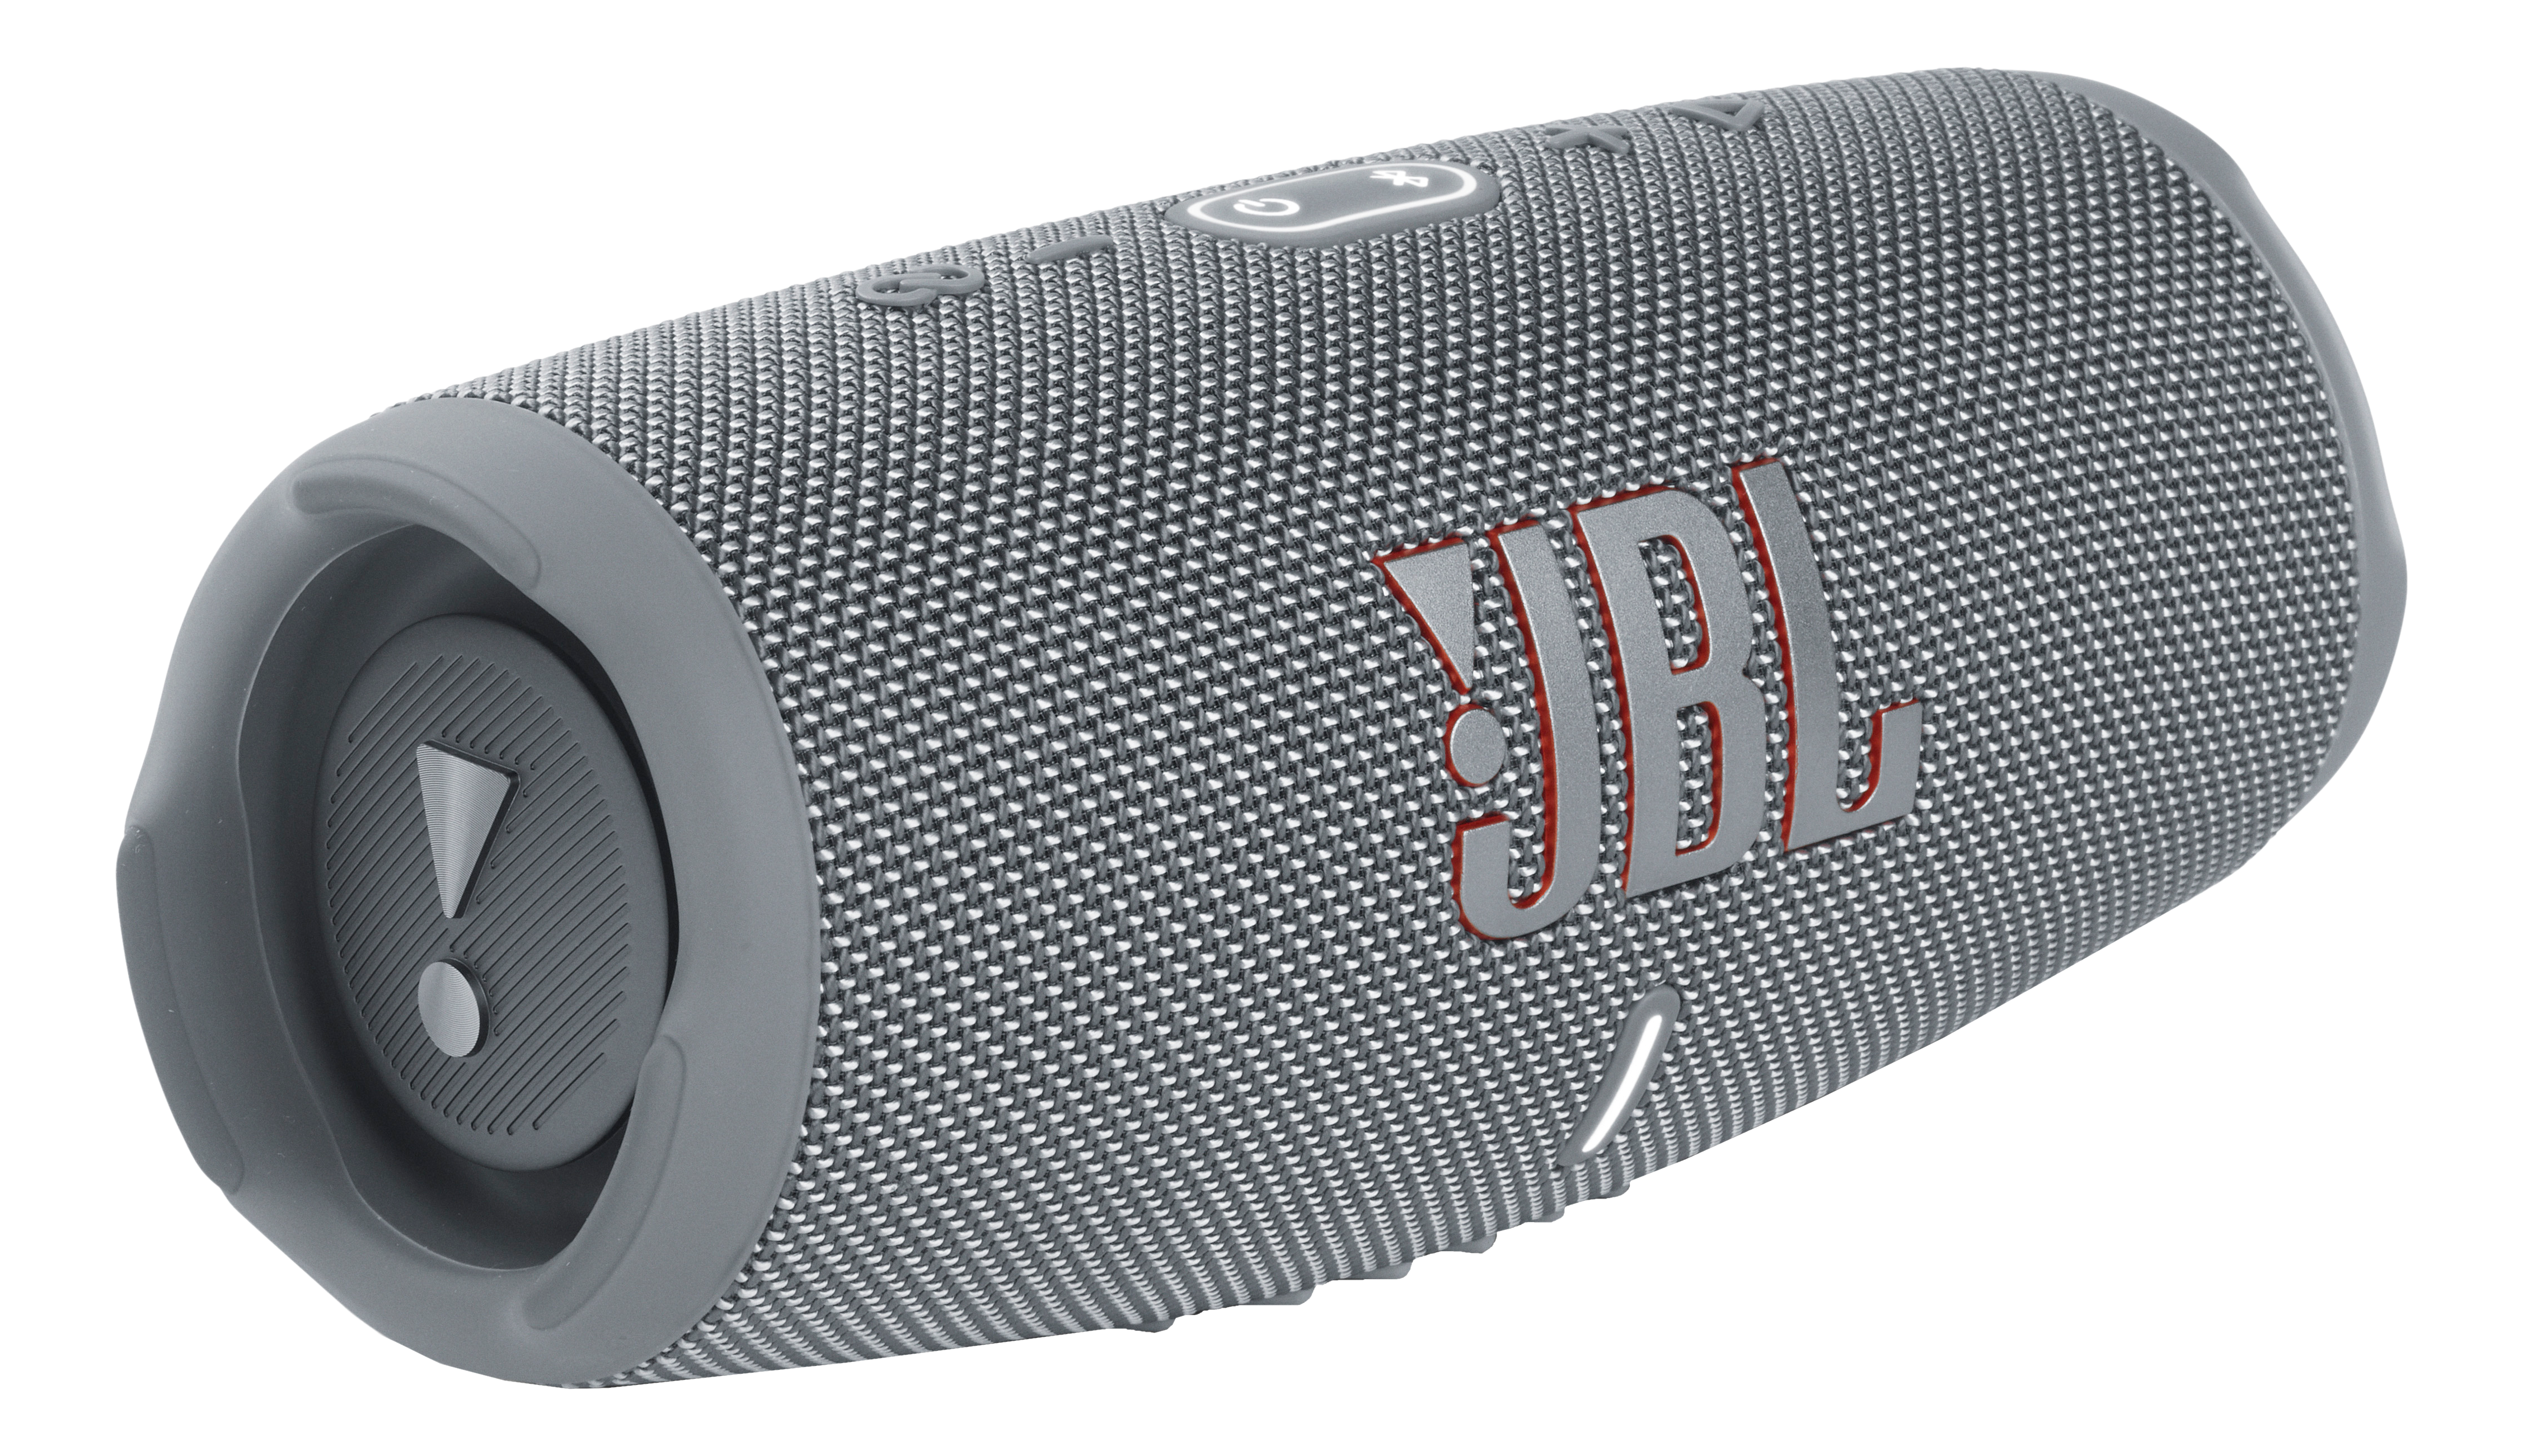 JBL Charge 5 - Haut-parleur Bluetooth (Gris/Noir)